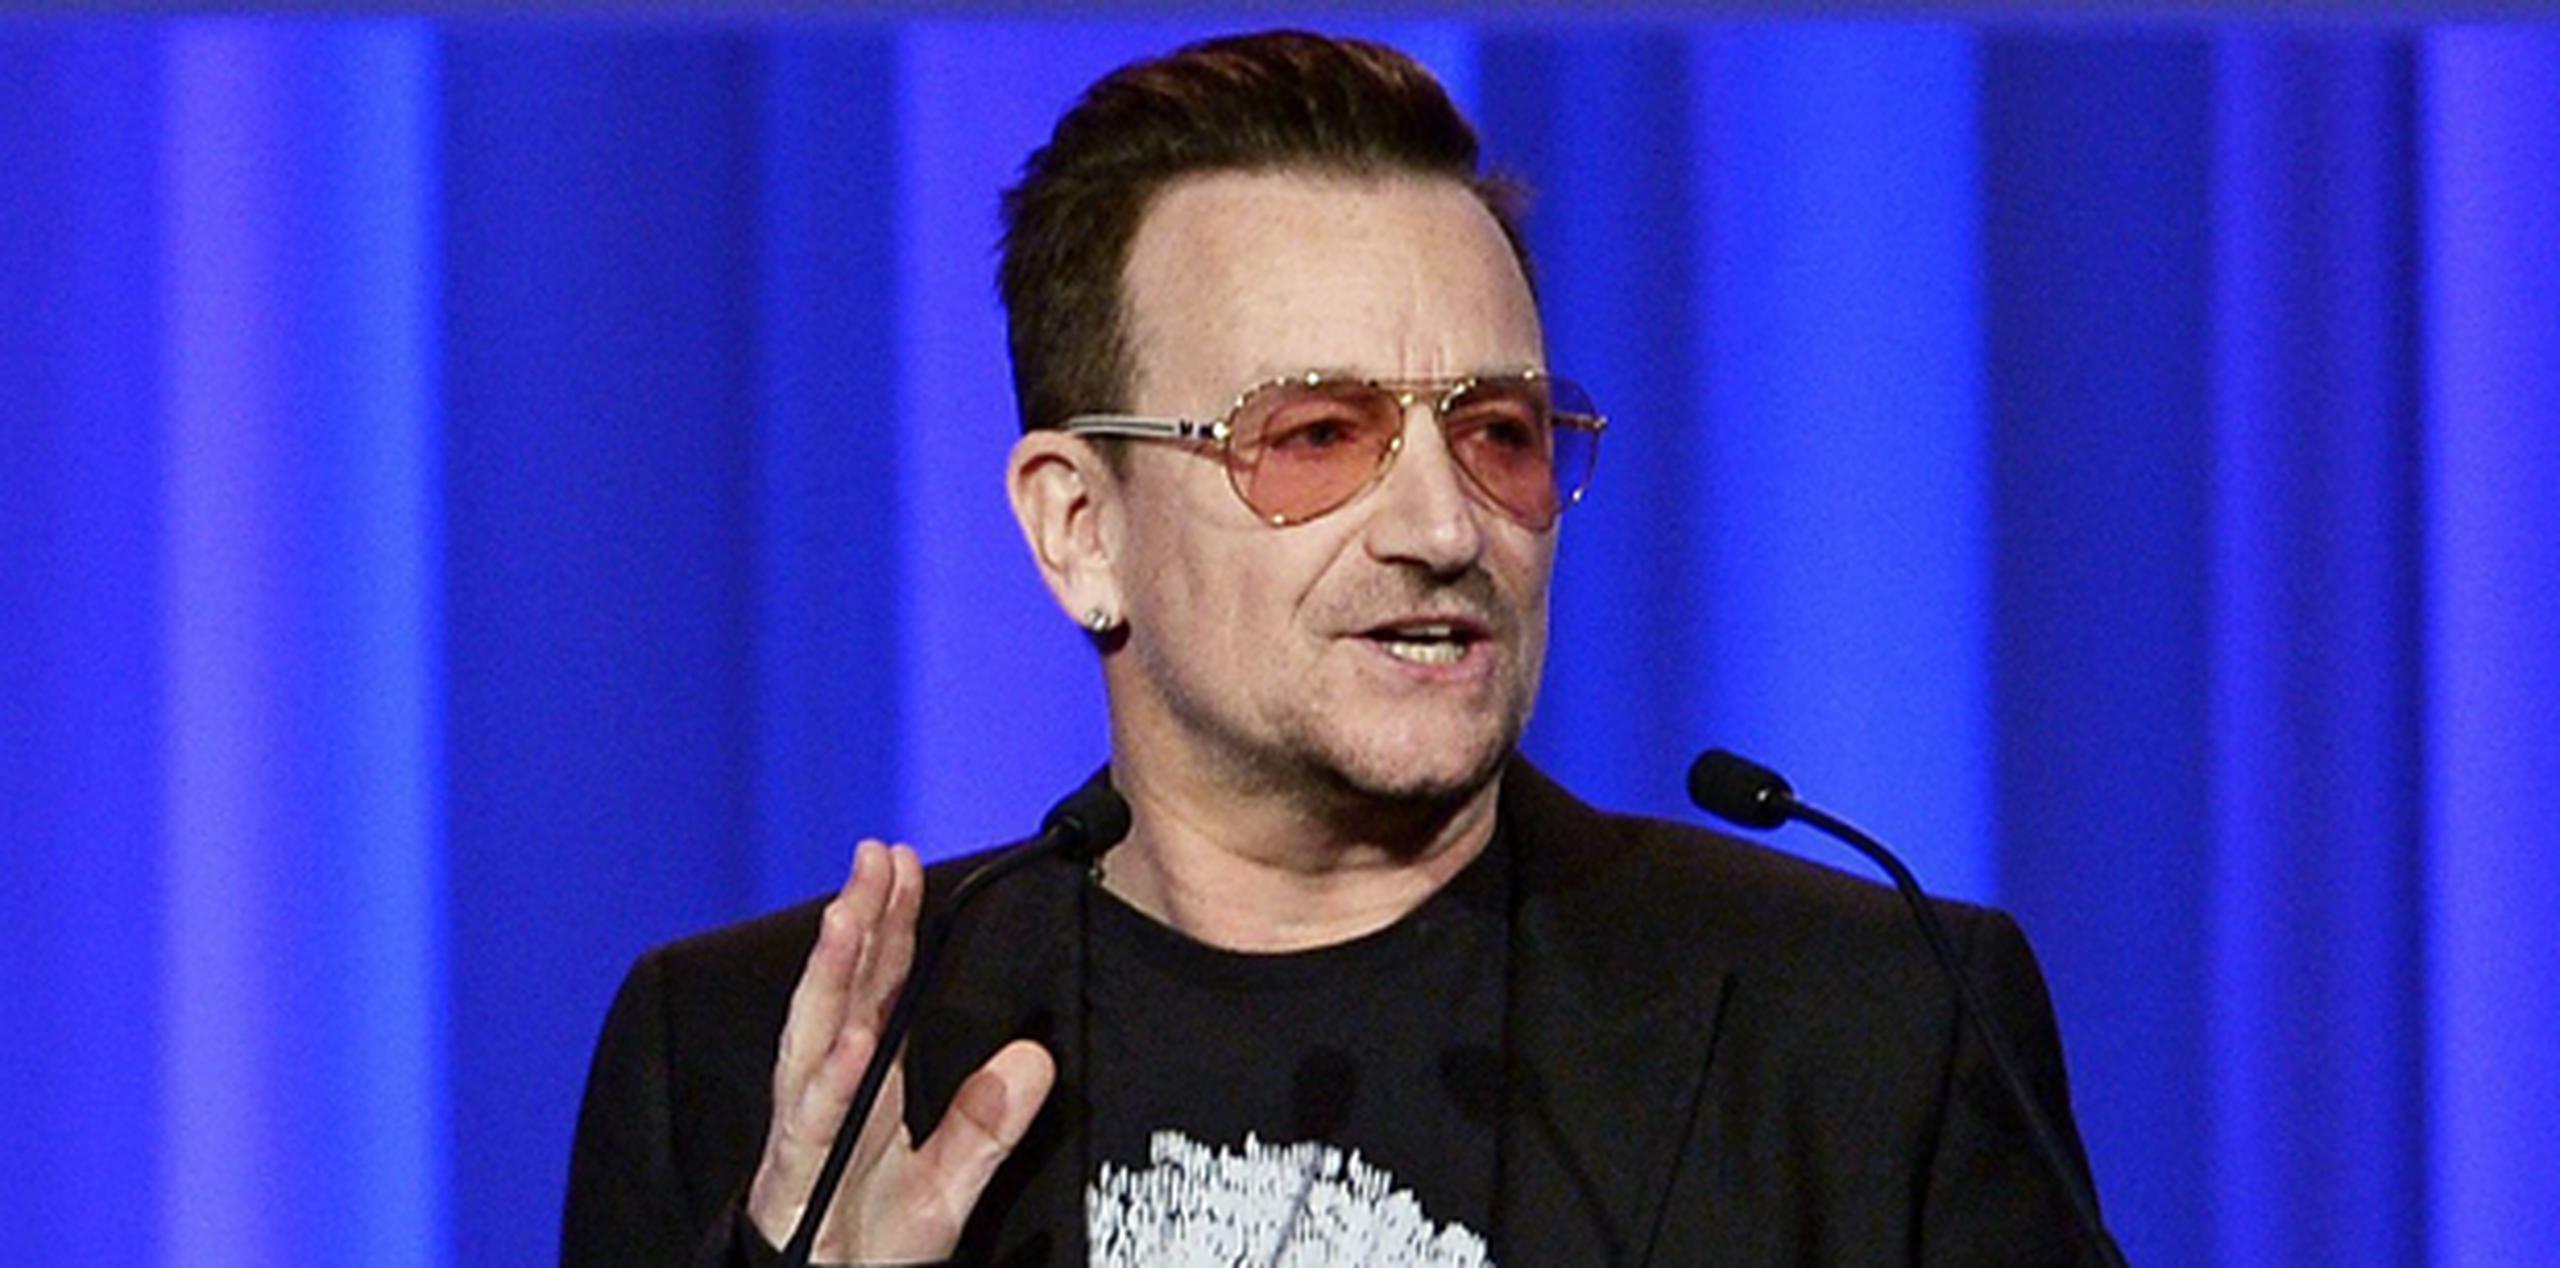 El nuevo disco de estudio del grupo liderado por Bono (en la foto) y The Edge será el número 13 en su carrera. (AFP)